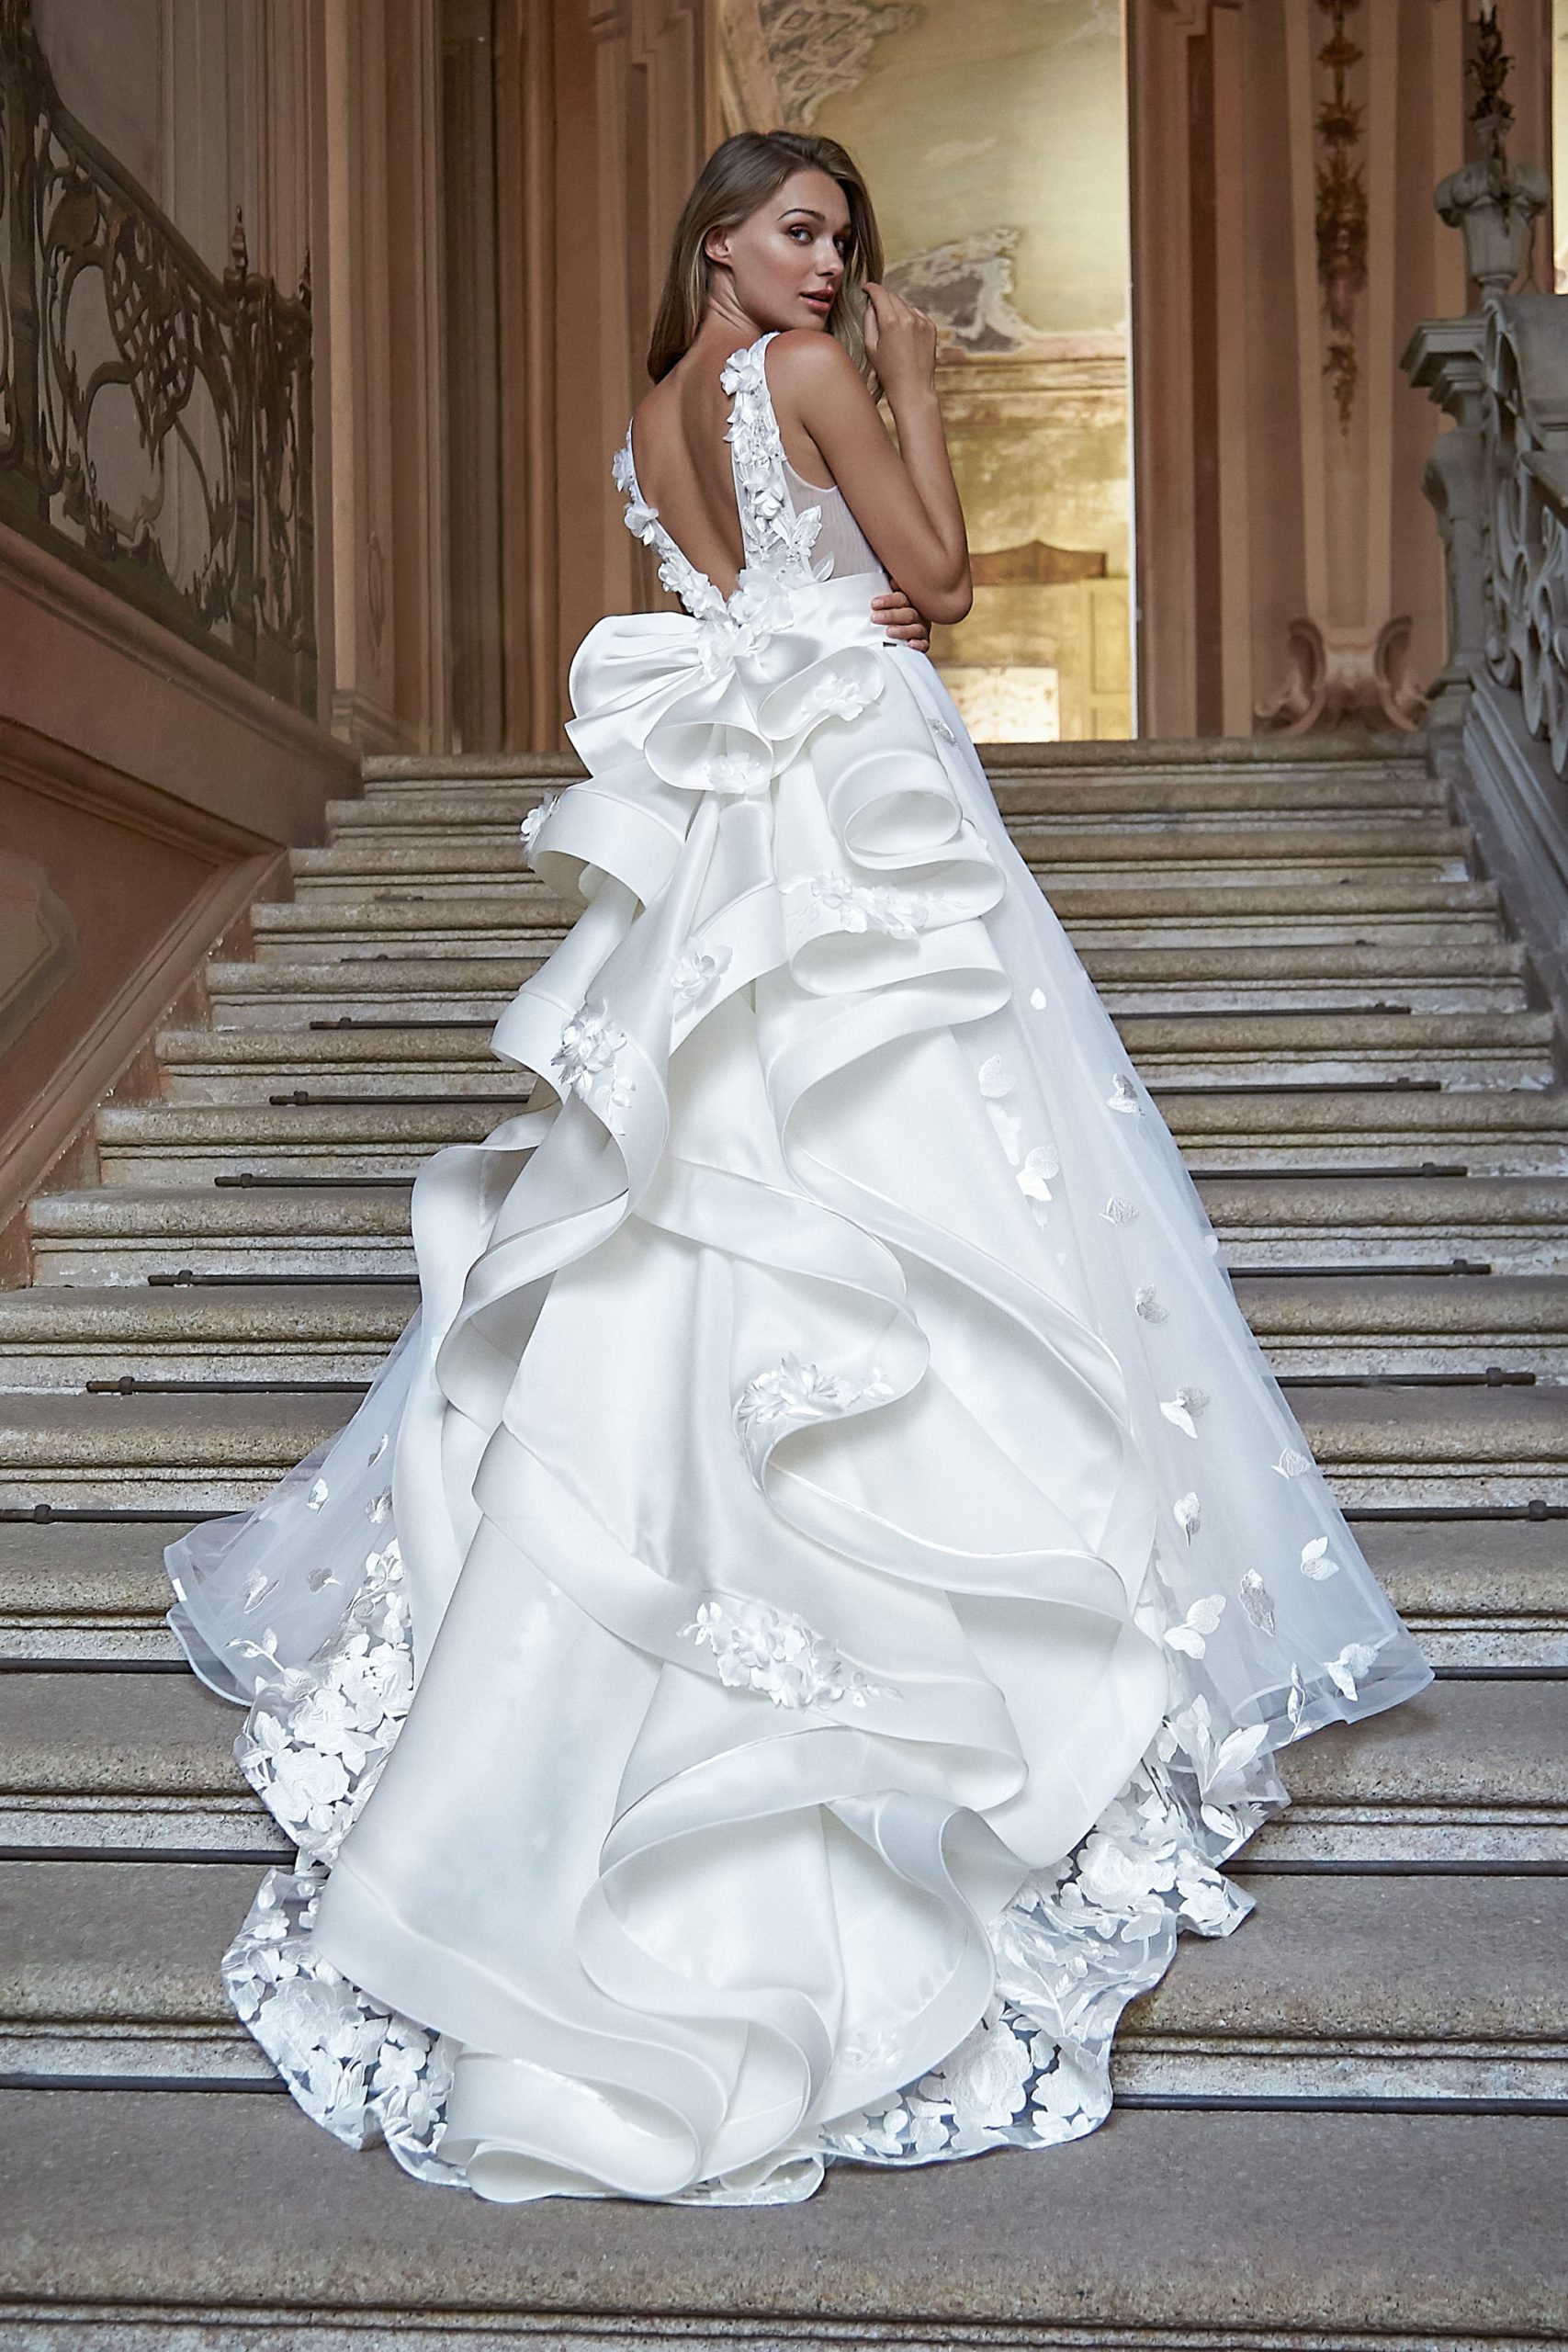 Vestiti da Sposa per Matrimoni Glamour: Brilla di Eleganza nel Magico Giorno del Tuo "Sì" - Arte e Bellezza 100% Made in Italy per un Look Nuziale Indimenticabile   